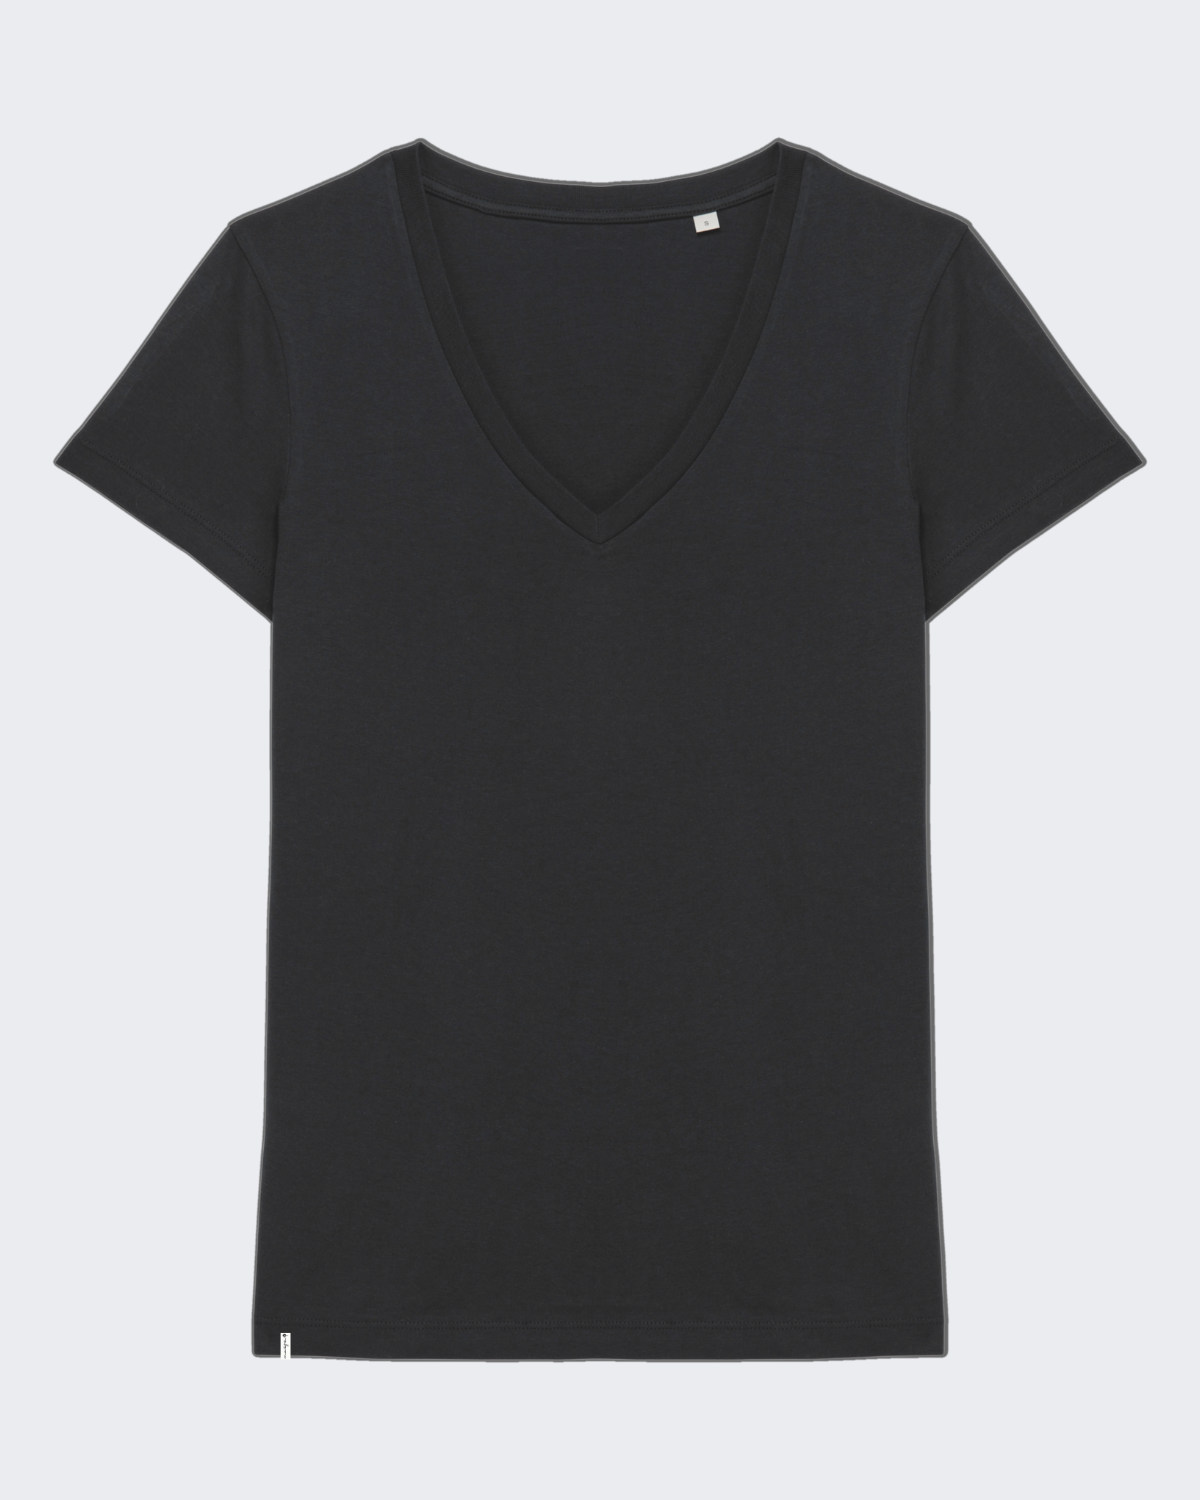 Damen-Shirt "Black" - V-Ausschnitt